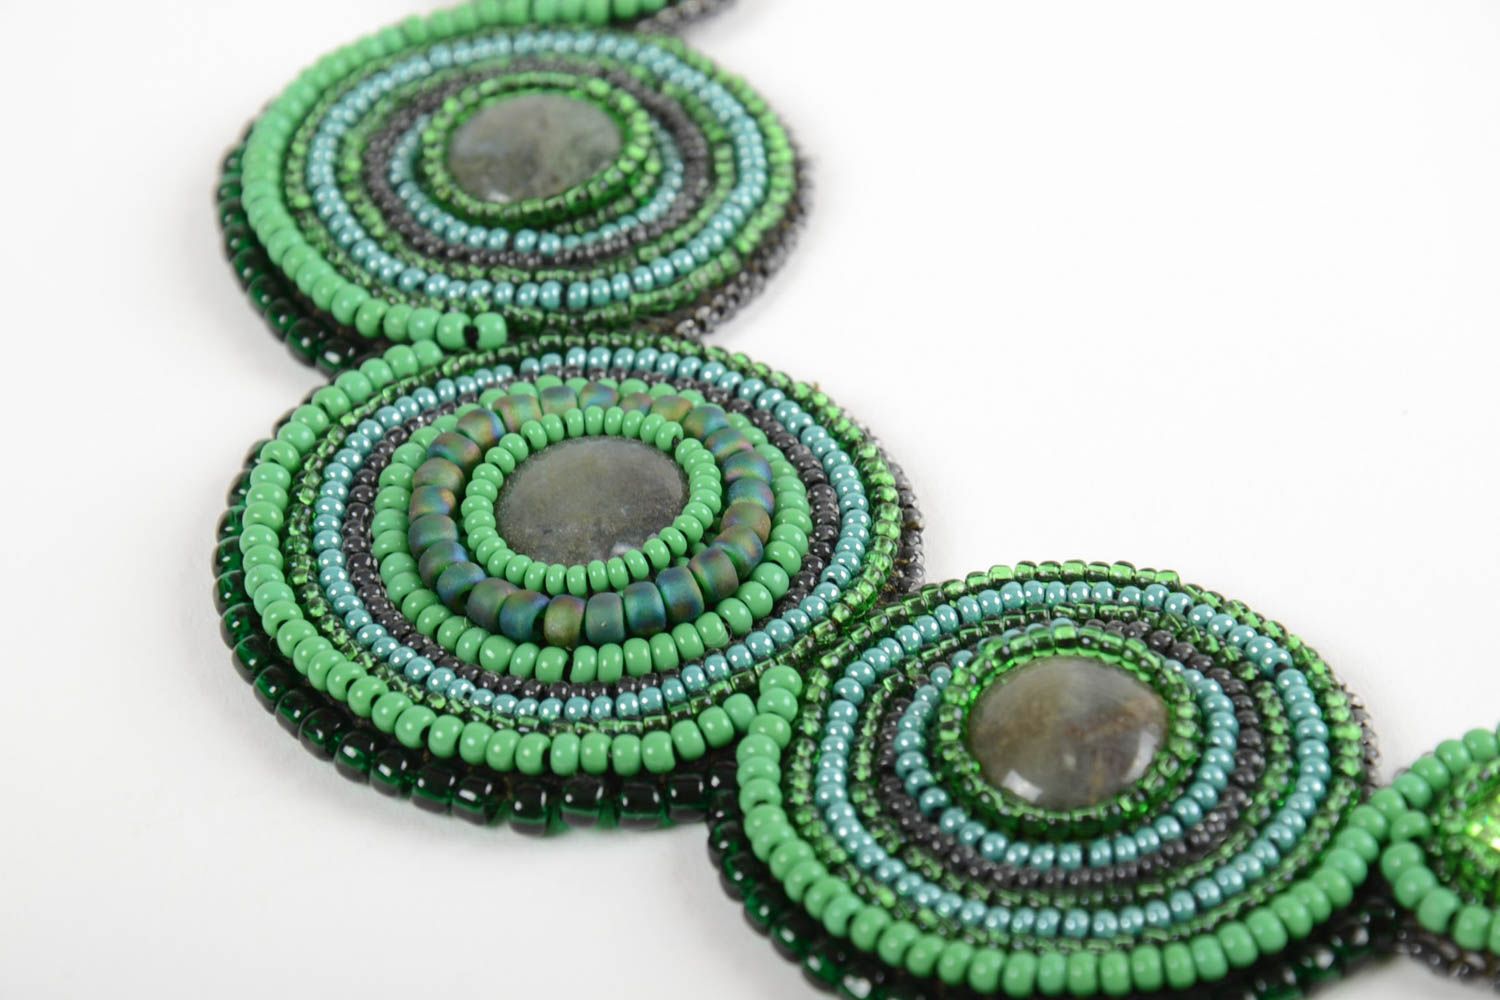 Ожерелье из бисера и натуральных камней на коже ручной работы в зеленых тонах фото 3